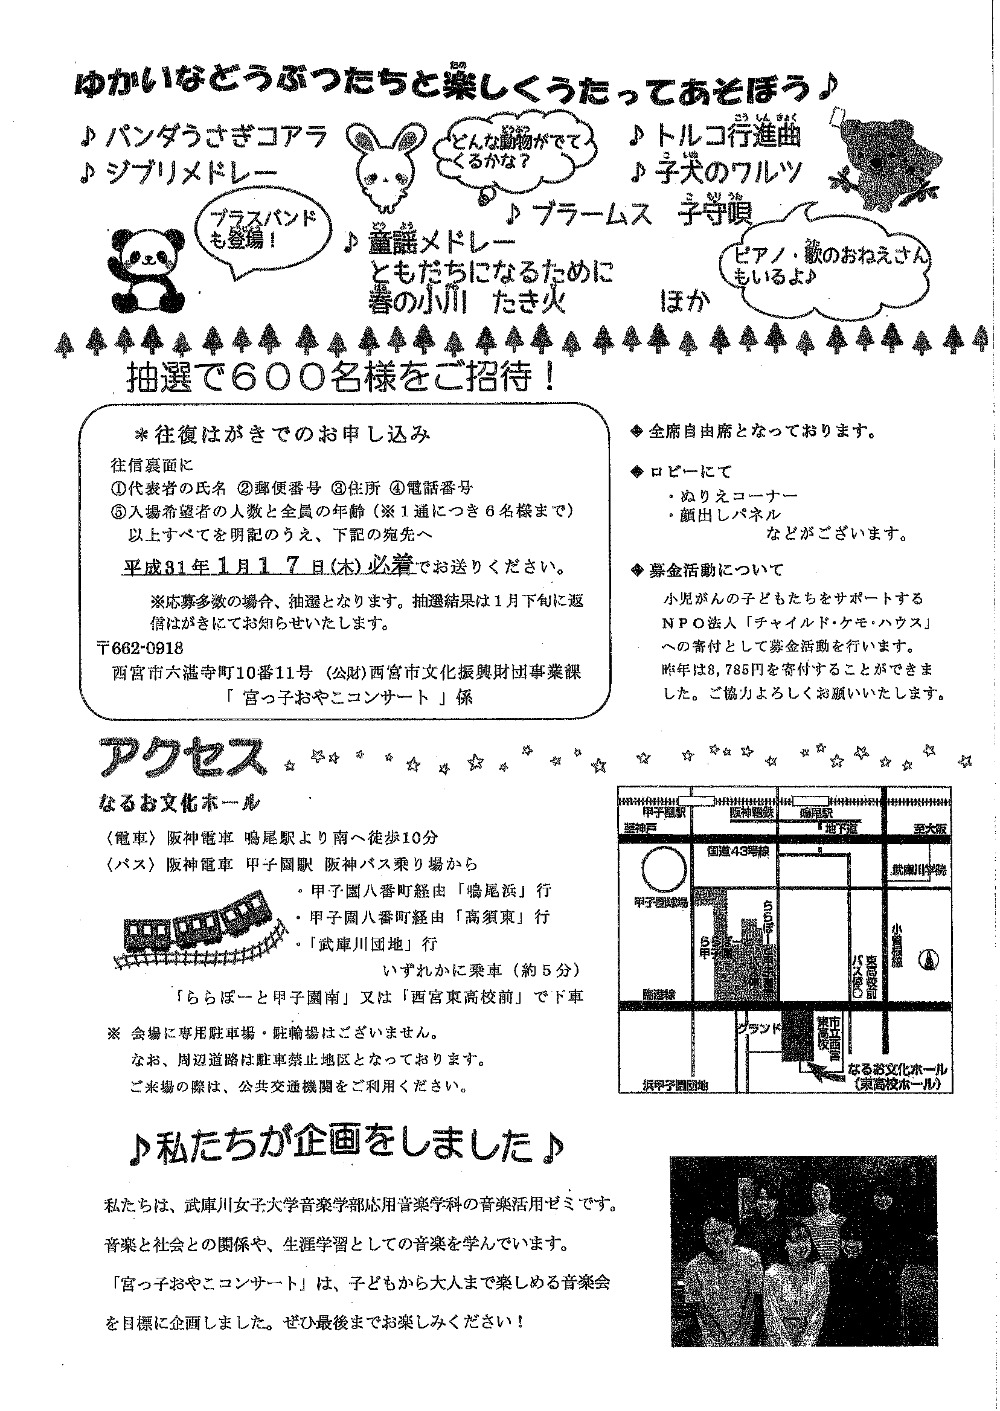 宮っこおやこコンサート「ゆかいな音楽会」 | 兵庫県西宮市 | イベント